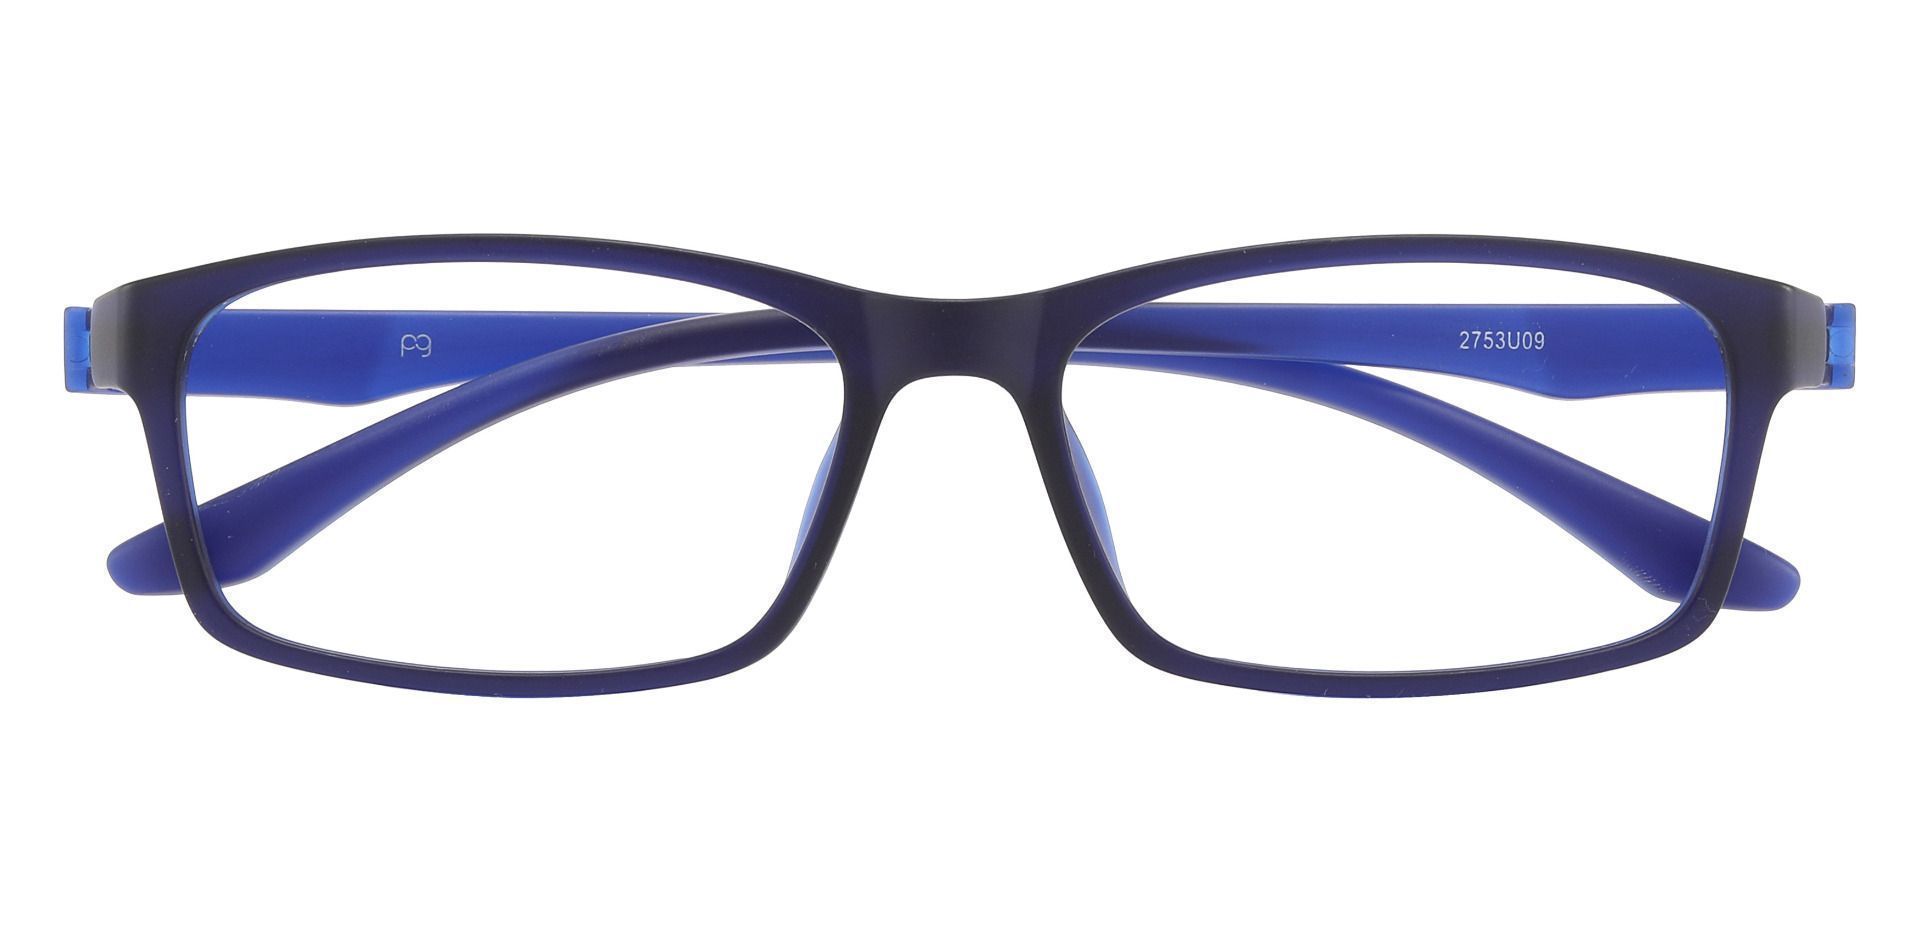 Poplar Rectangle Eyeglasses Frame - Matte Navy 